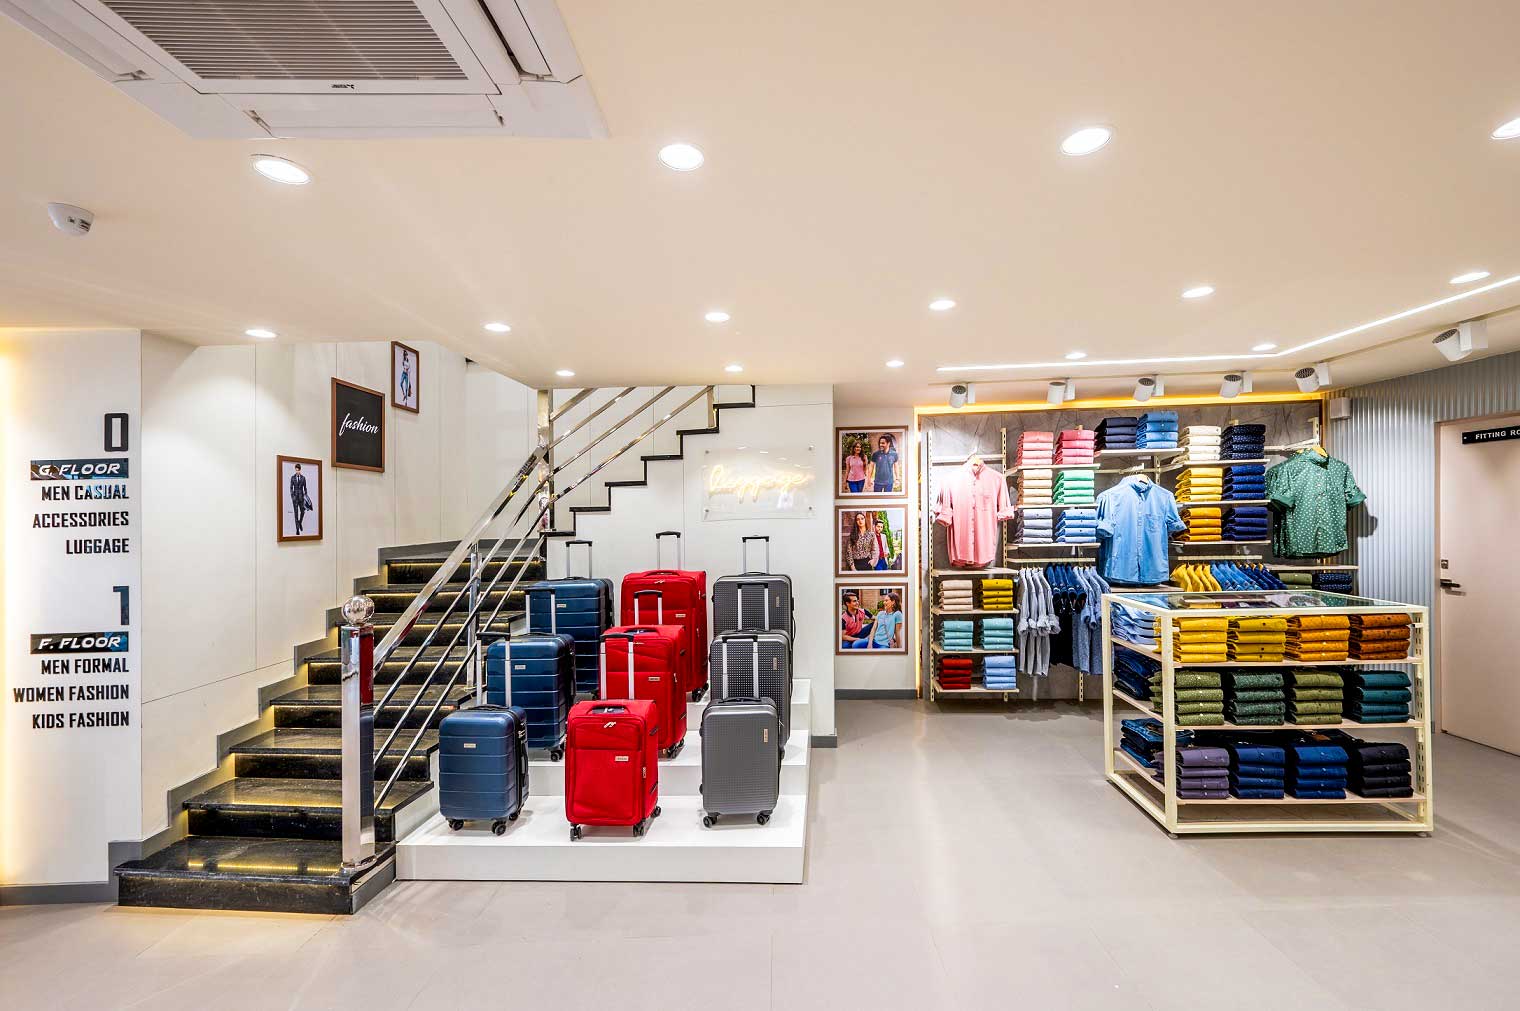 Cantabil Dehradun store- Inside look